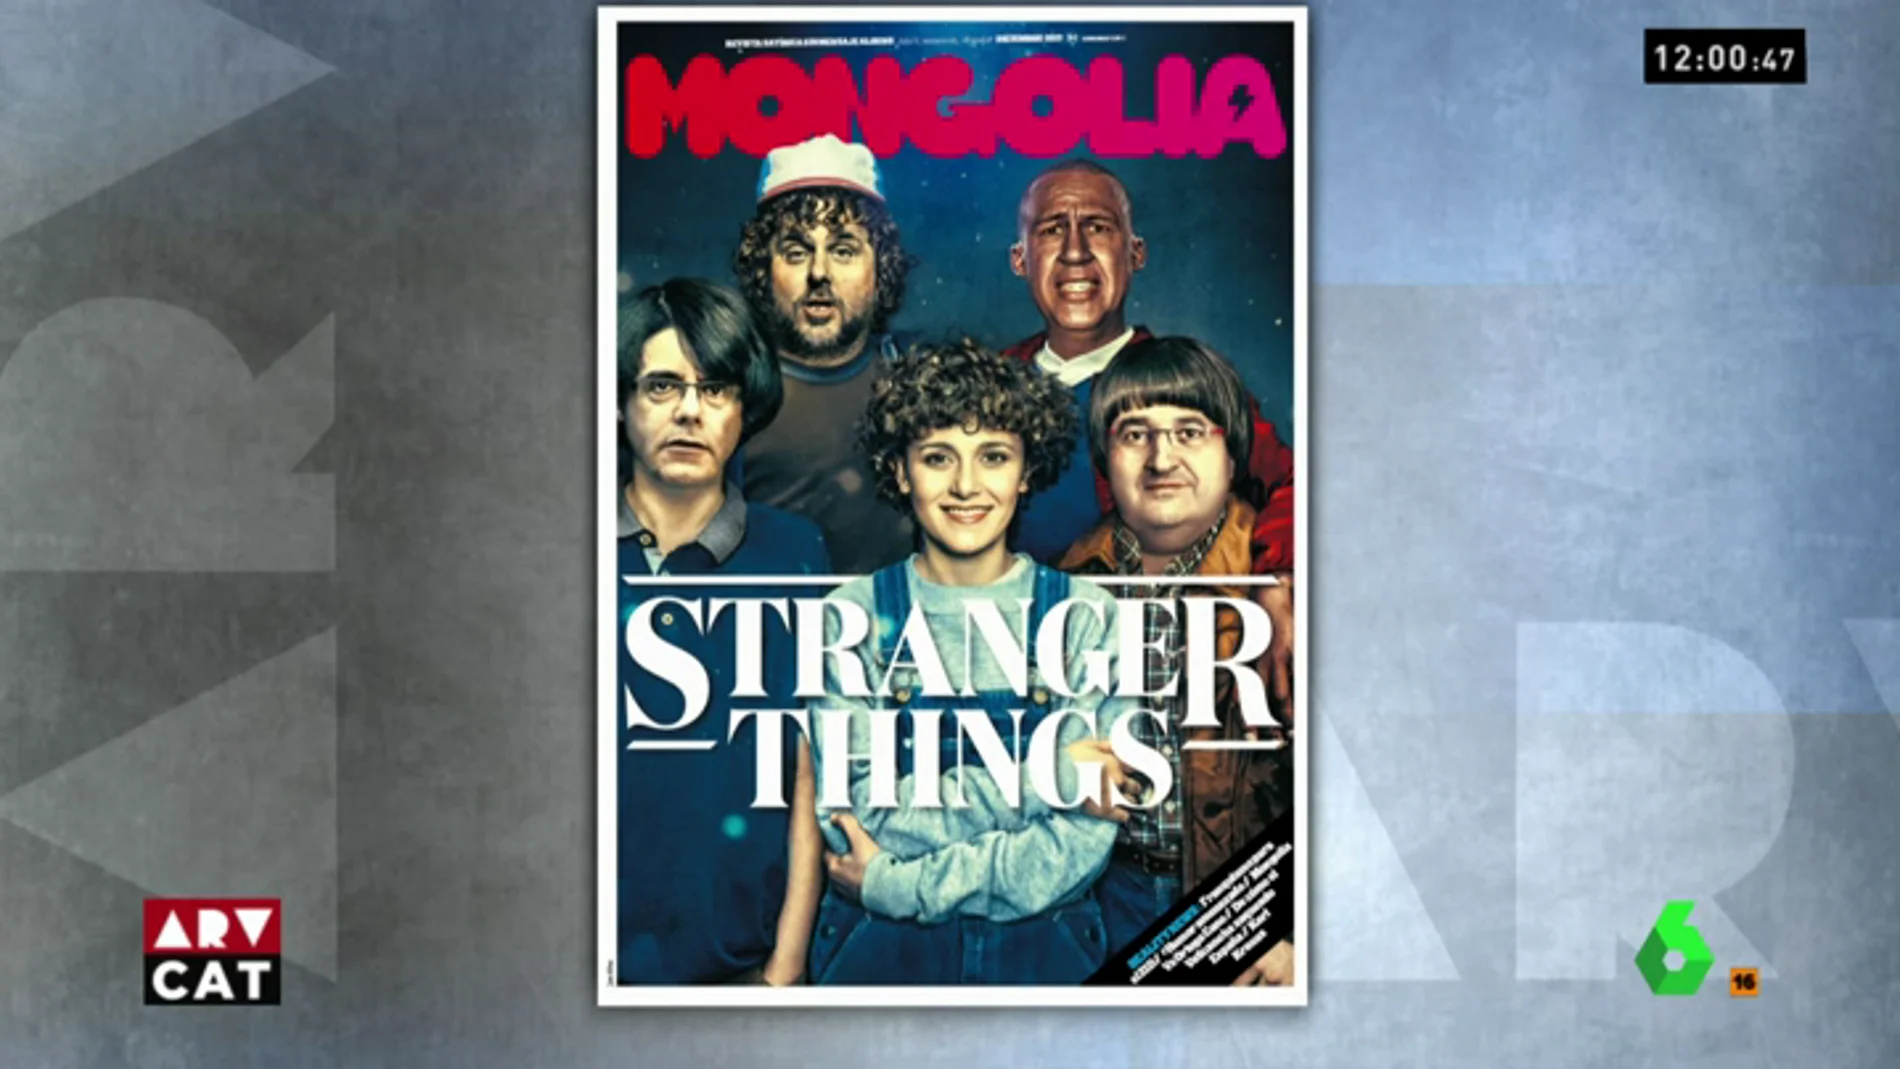 La nueva portada de la revista Mongolia